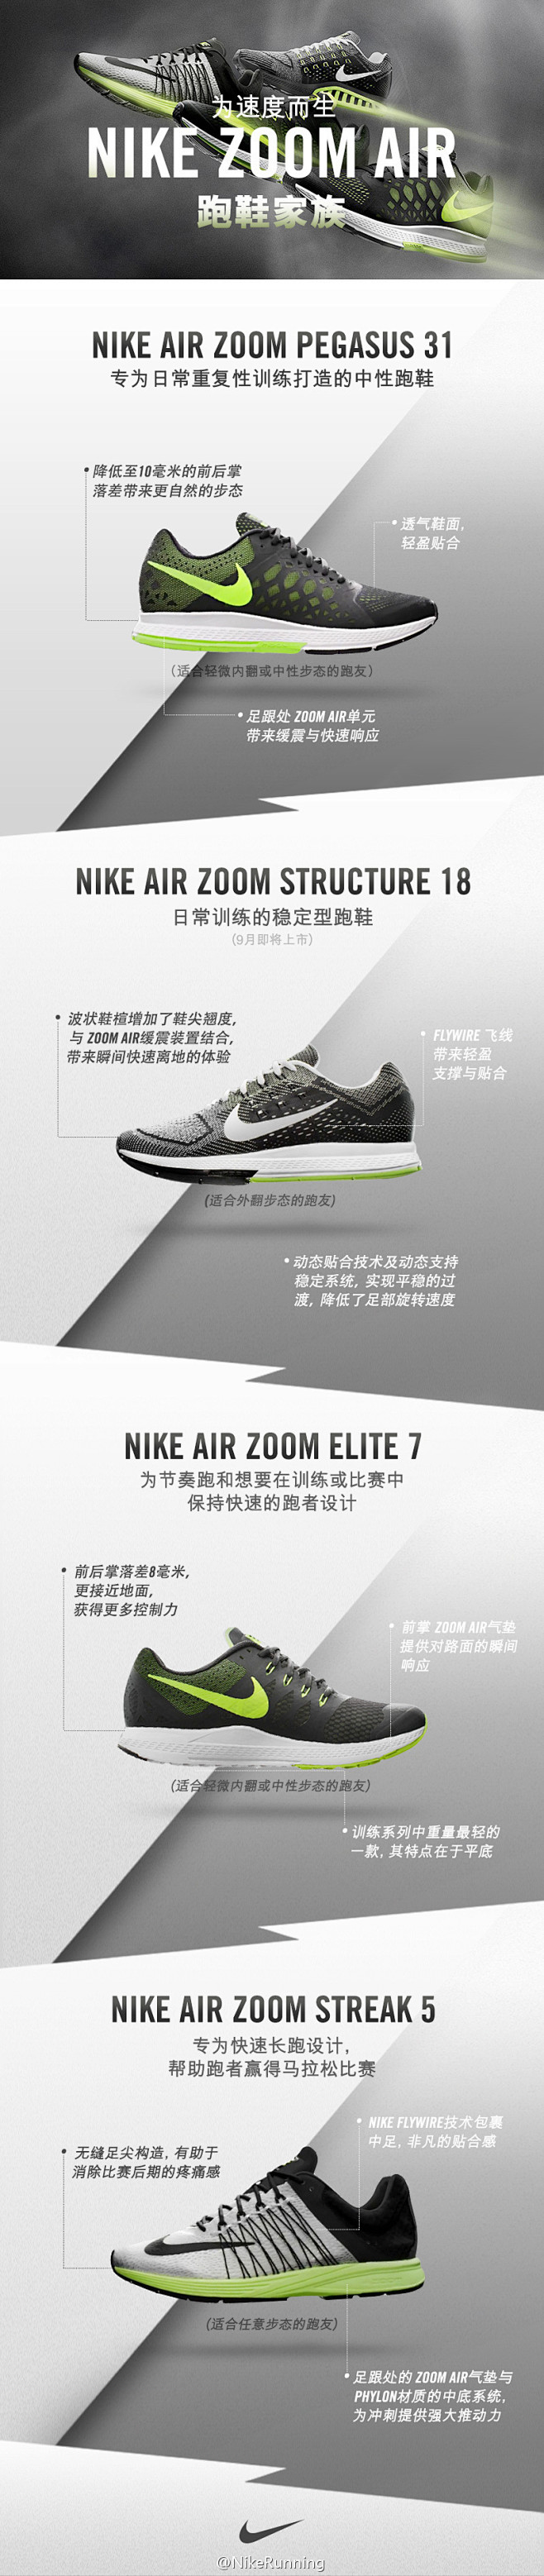 系列组合Nike Zoom Air